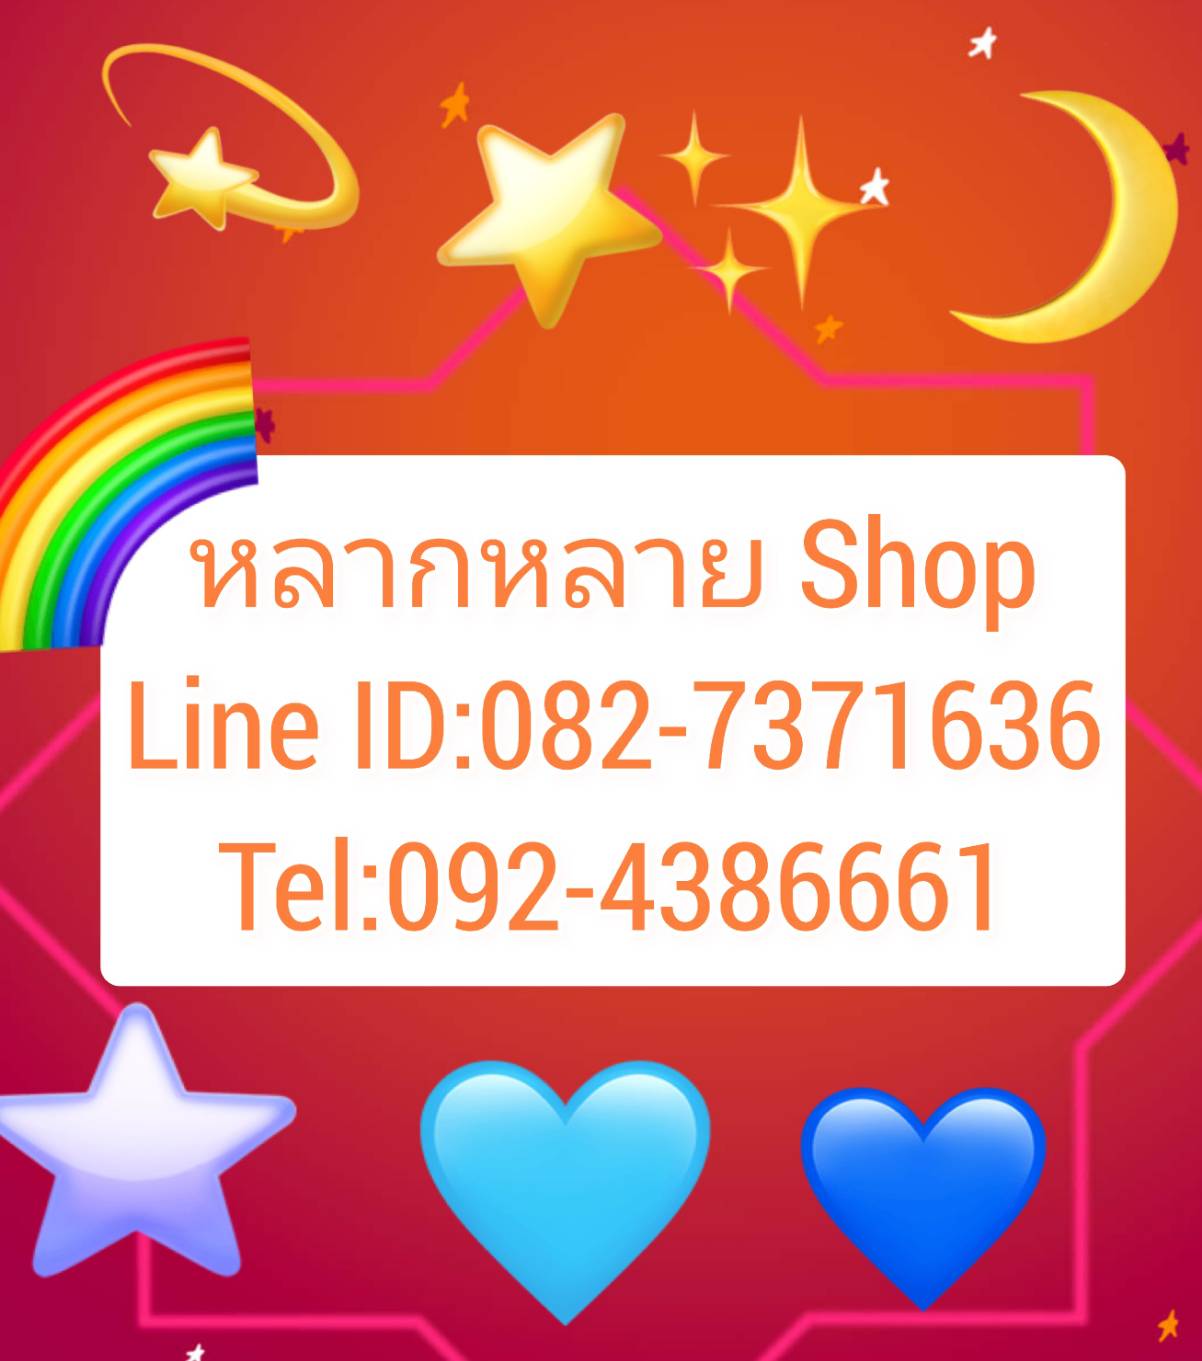   Line ID: 082-7371636
Tel 0924386661                                                                                                                                                                                                                            Sino 觻ѹͧ ͧ  §